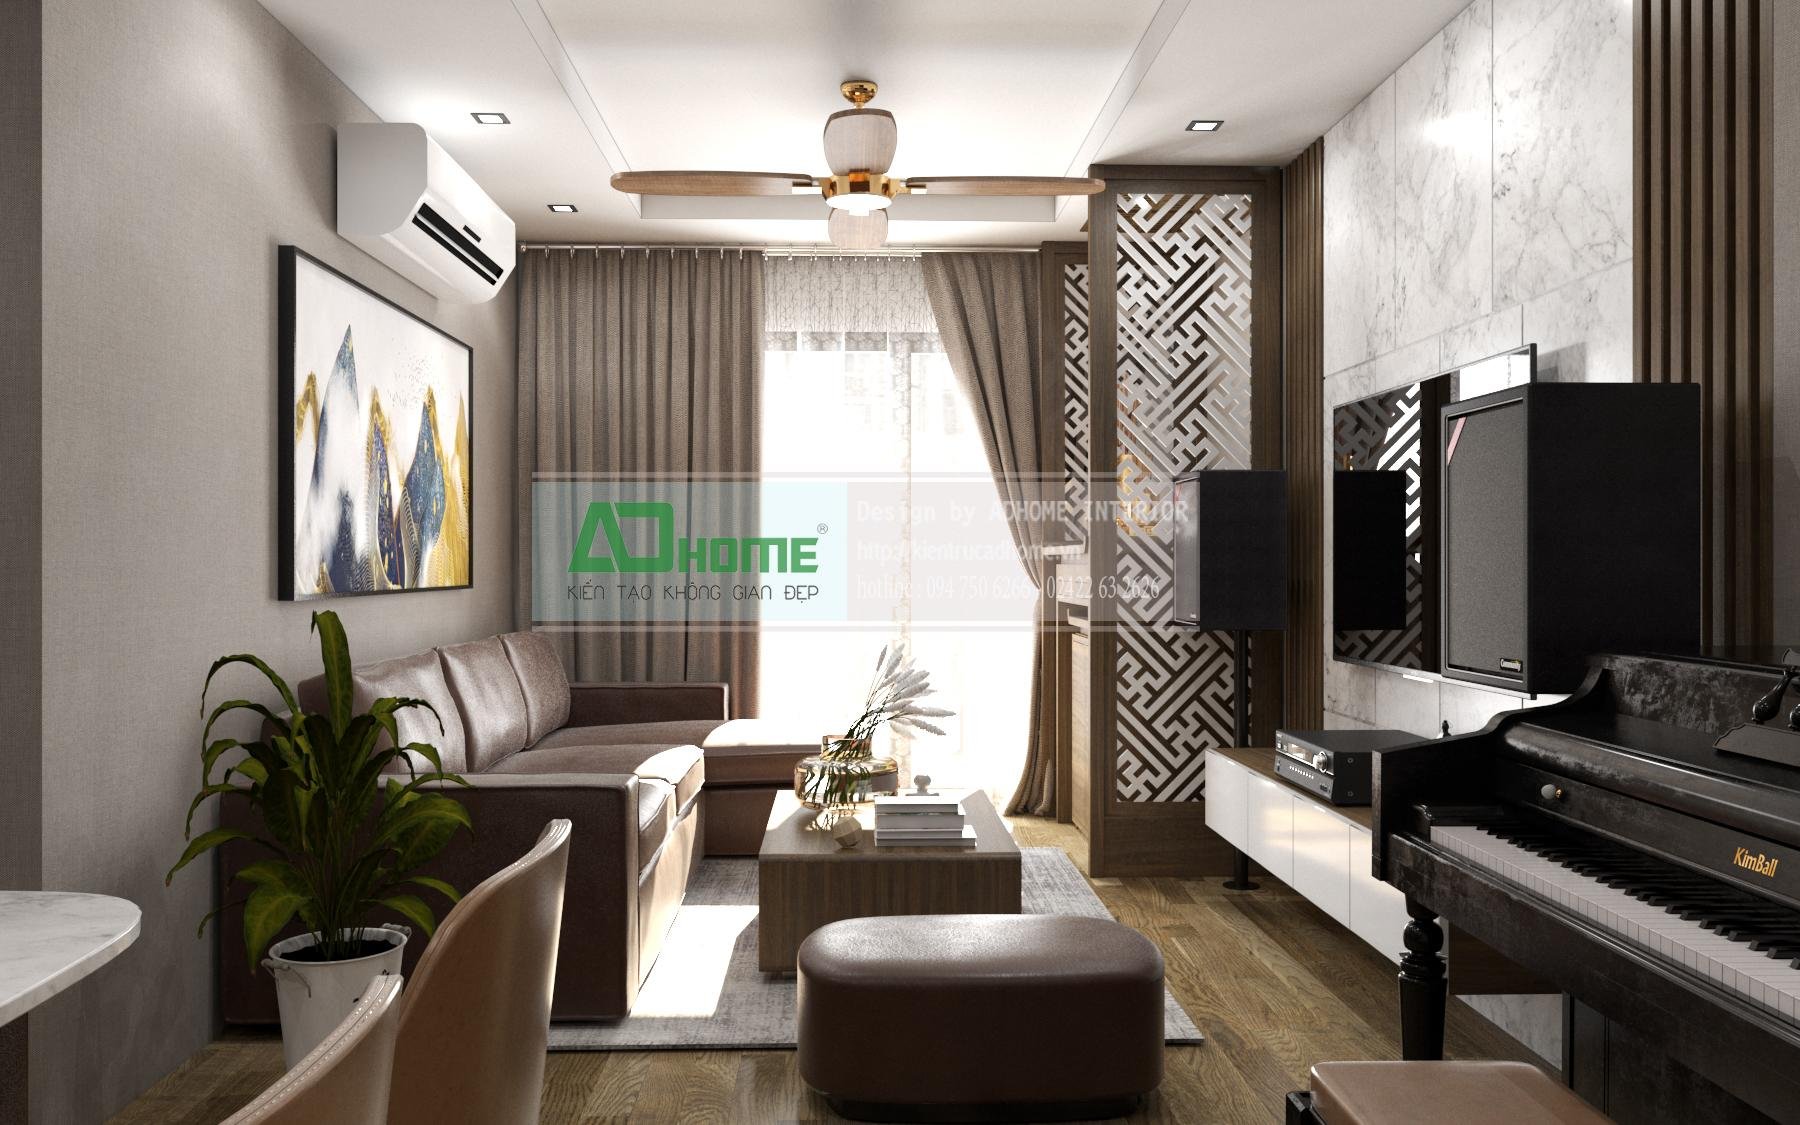 Goldmarkcity - Thiết kế và thi công nội thất căn hộ 03 Sapphire3 - 110m2 